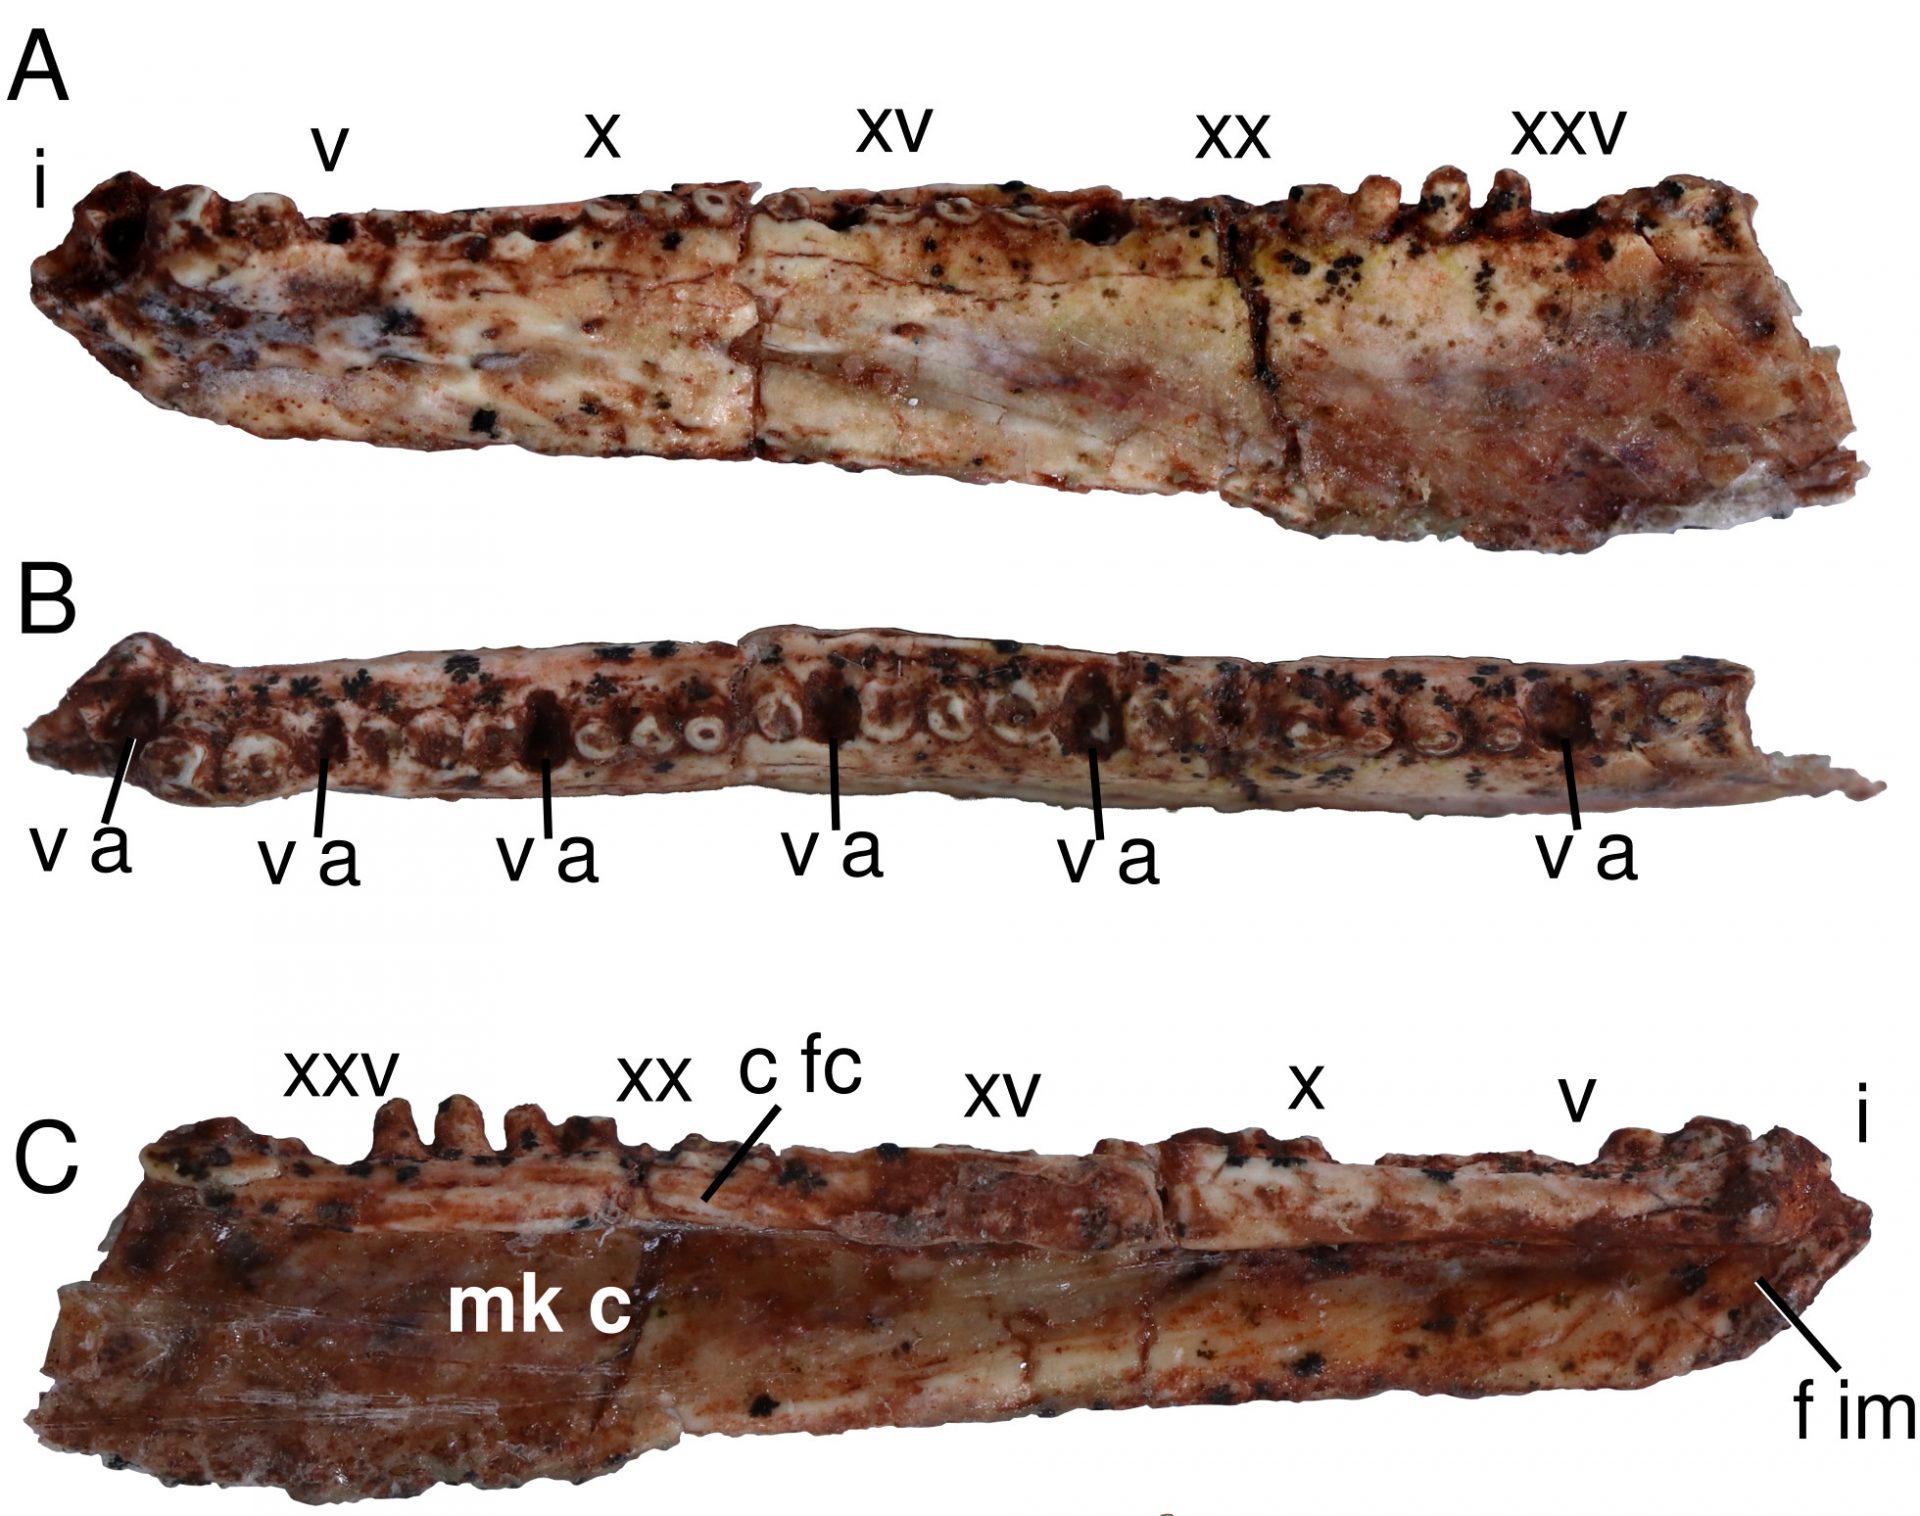 sabervivermais.com - Pesquisadores da UFPI trocavam um  pneu quando descobriram réptil da Era Paleozoica